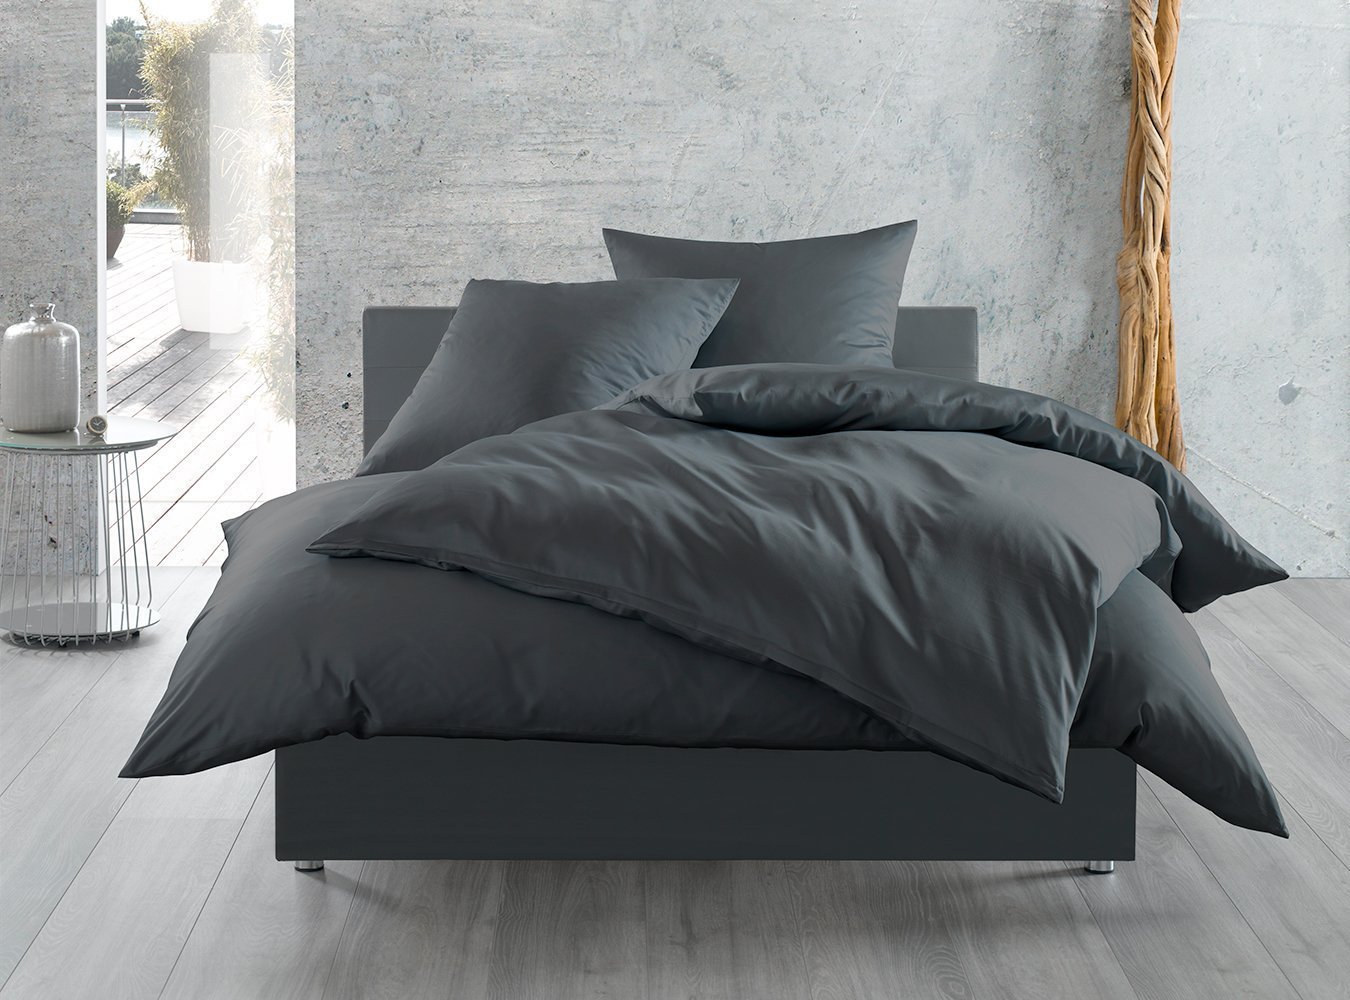 Bettwaesche-mit-Stil Bettbezug Baumwollsatin cm Bettwäsche uni anthrazit Mako-Satin / einfarbig 135x200 /